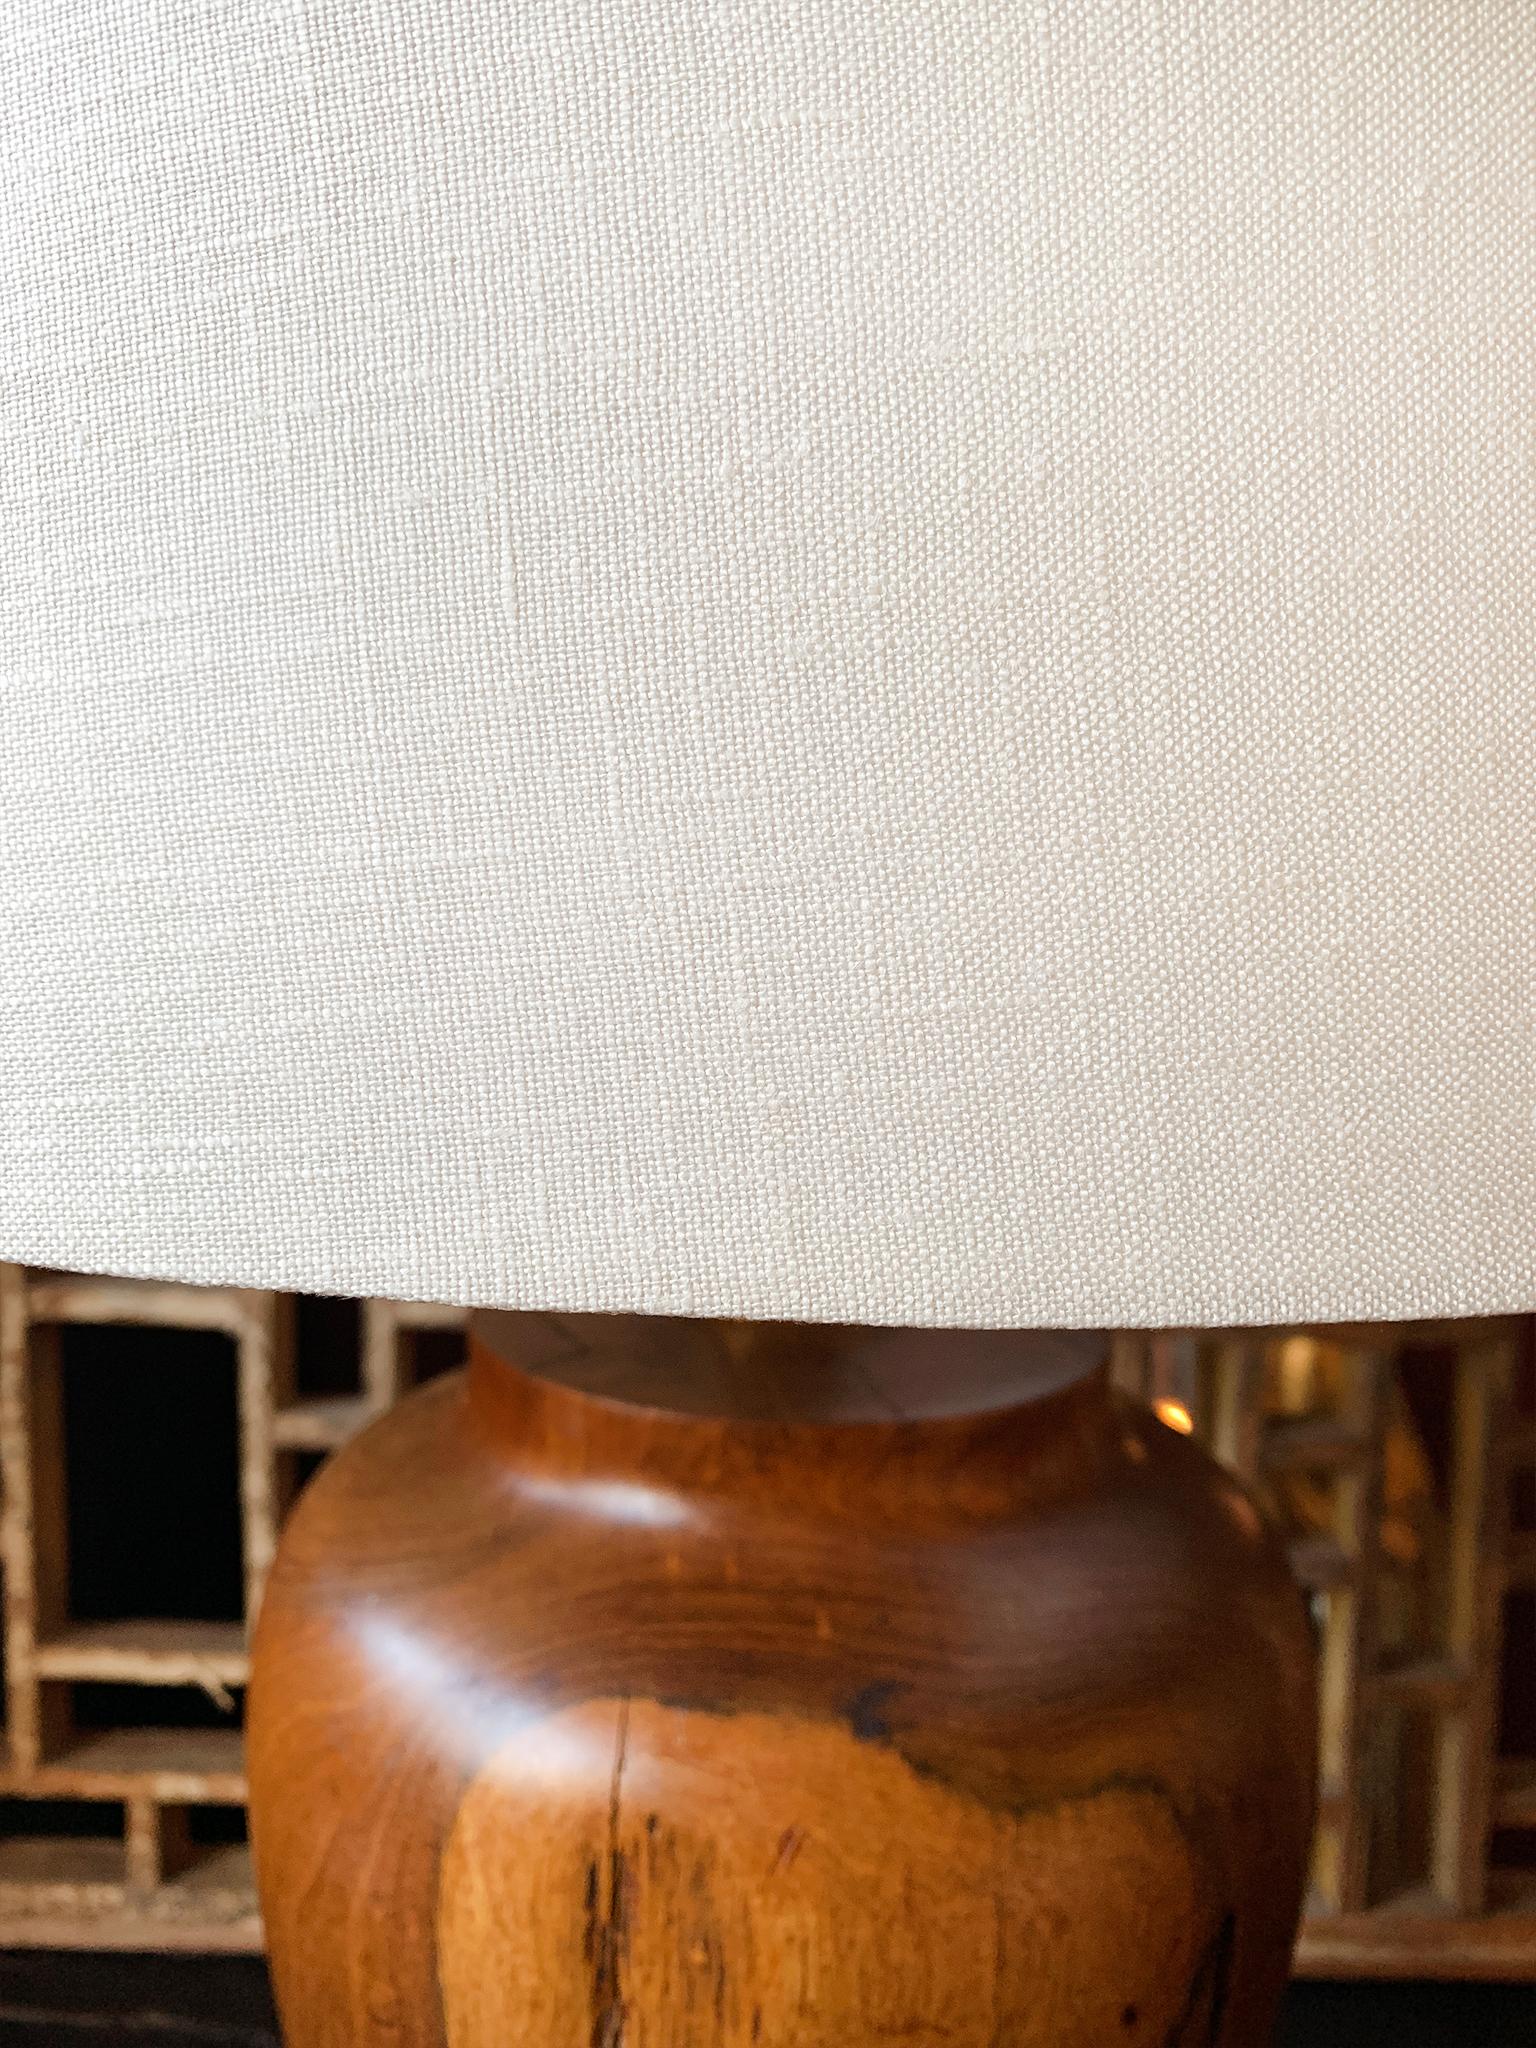 Mid-20th Century 1940s American Hardwood Turned Table Lamp